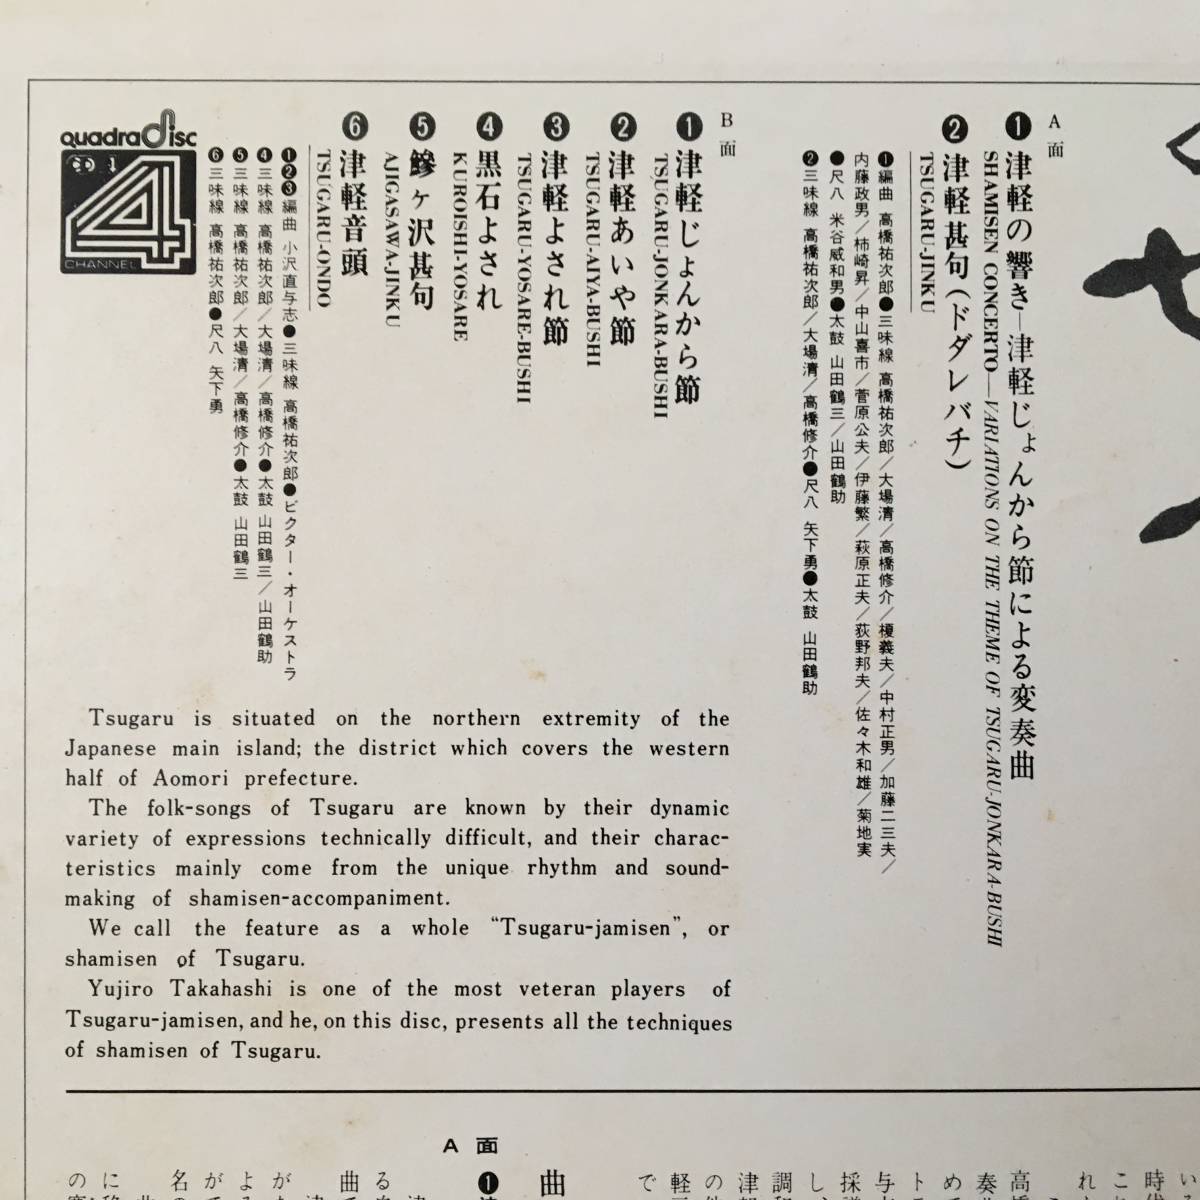 CD-4 高橋裕二郎 津軽三味線の世界 LP CD4K-7009 4CH 高音質盤_画像2